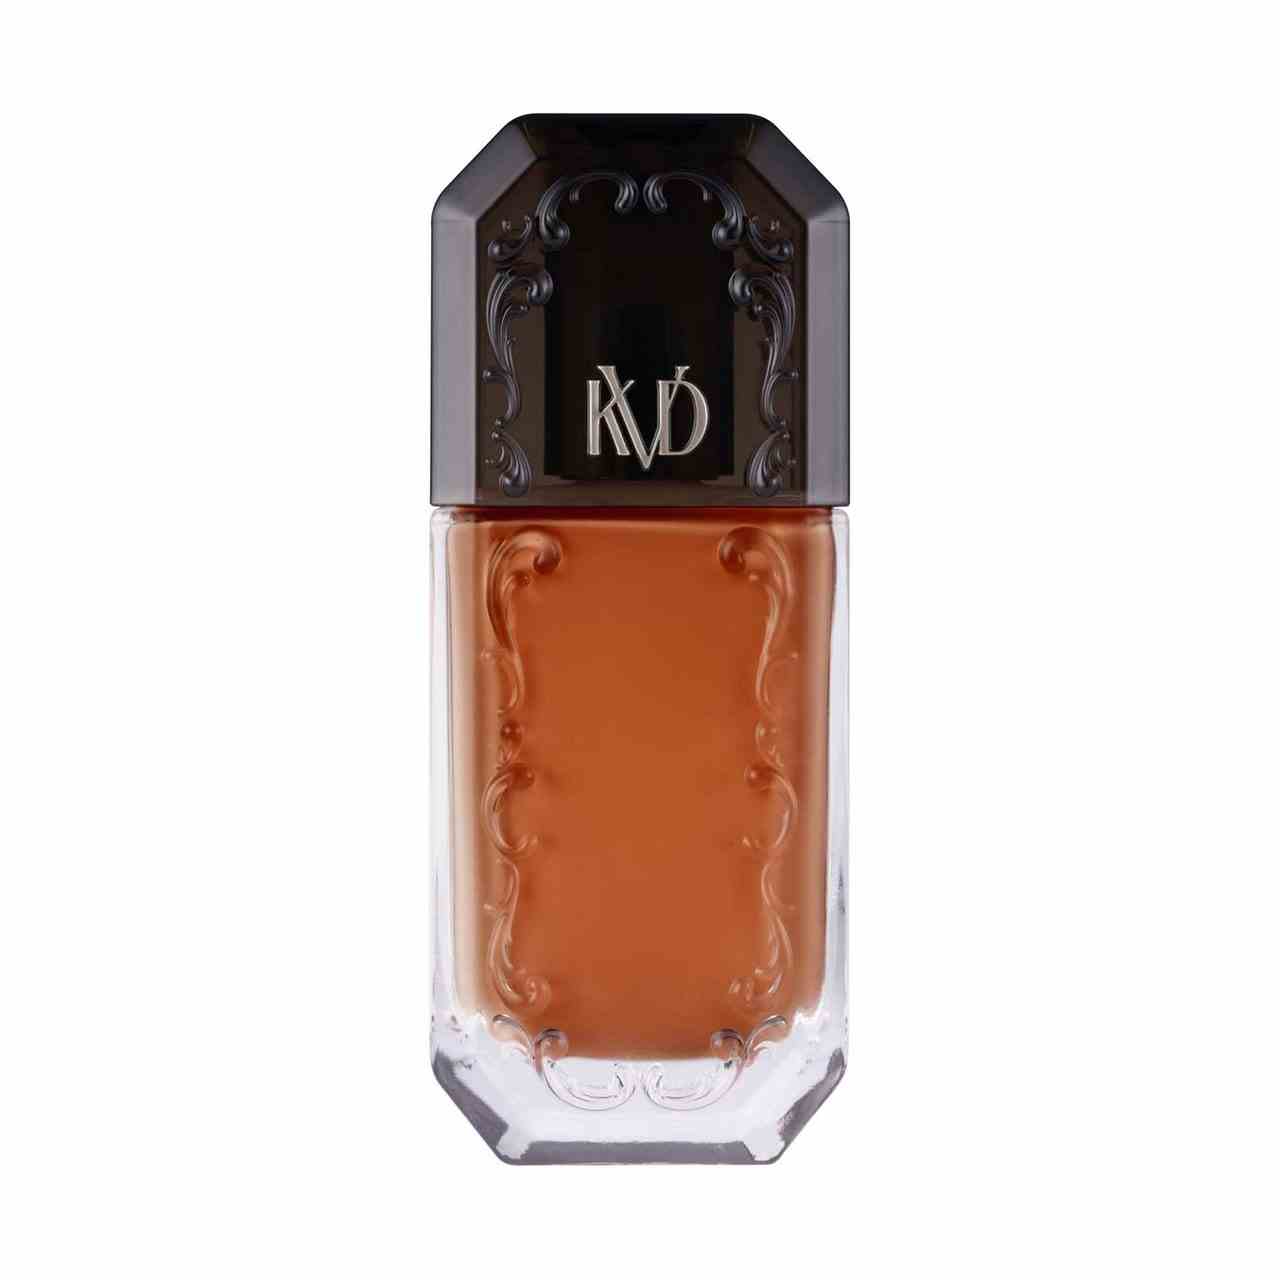 KVD Beauty Good Apple Serum Foundation Flasche Foundation mit gotischem Carving-Design und schwarzer Kappe auf weißem Hintergrund